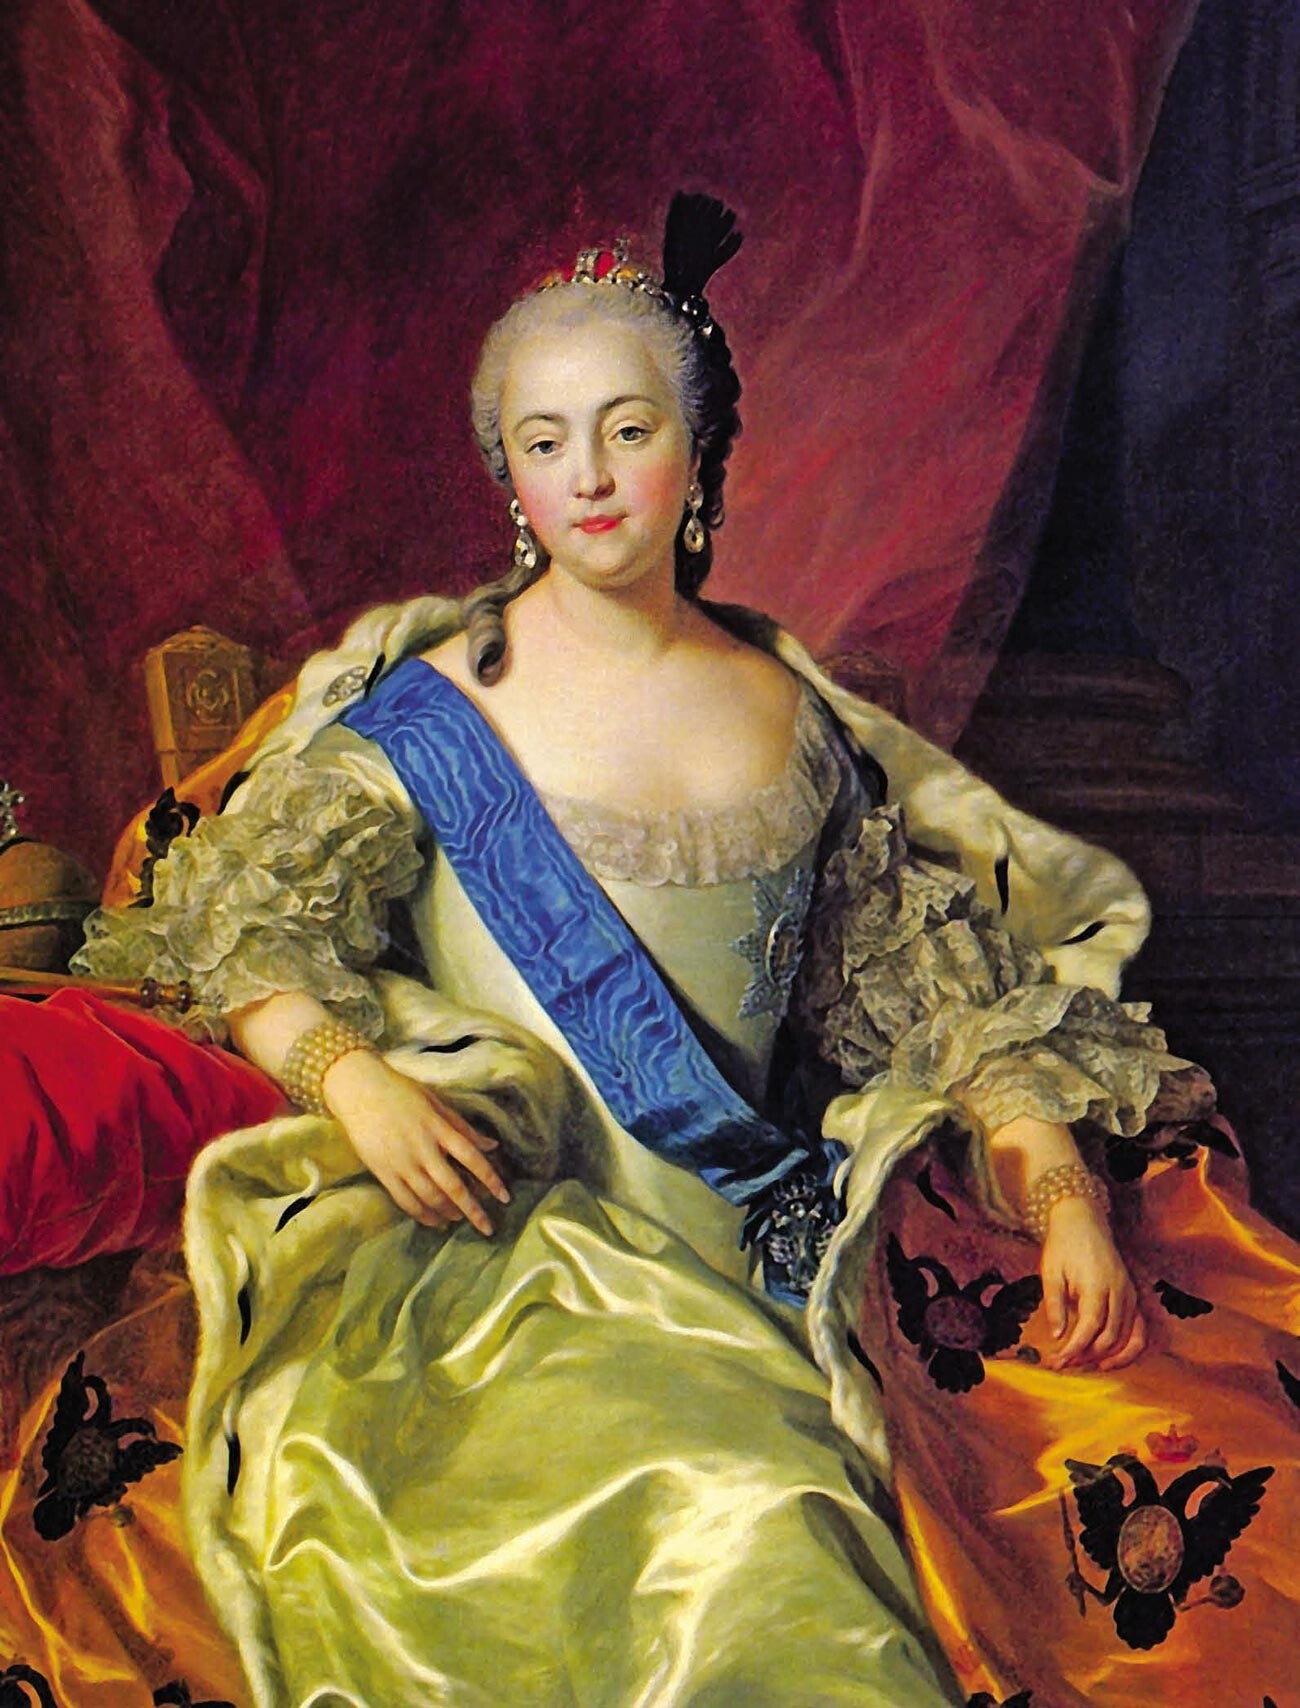 Kaiserin Elisabeth von Charles-André van Loo, ein Paradeporträt.